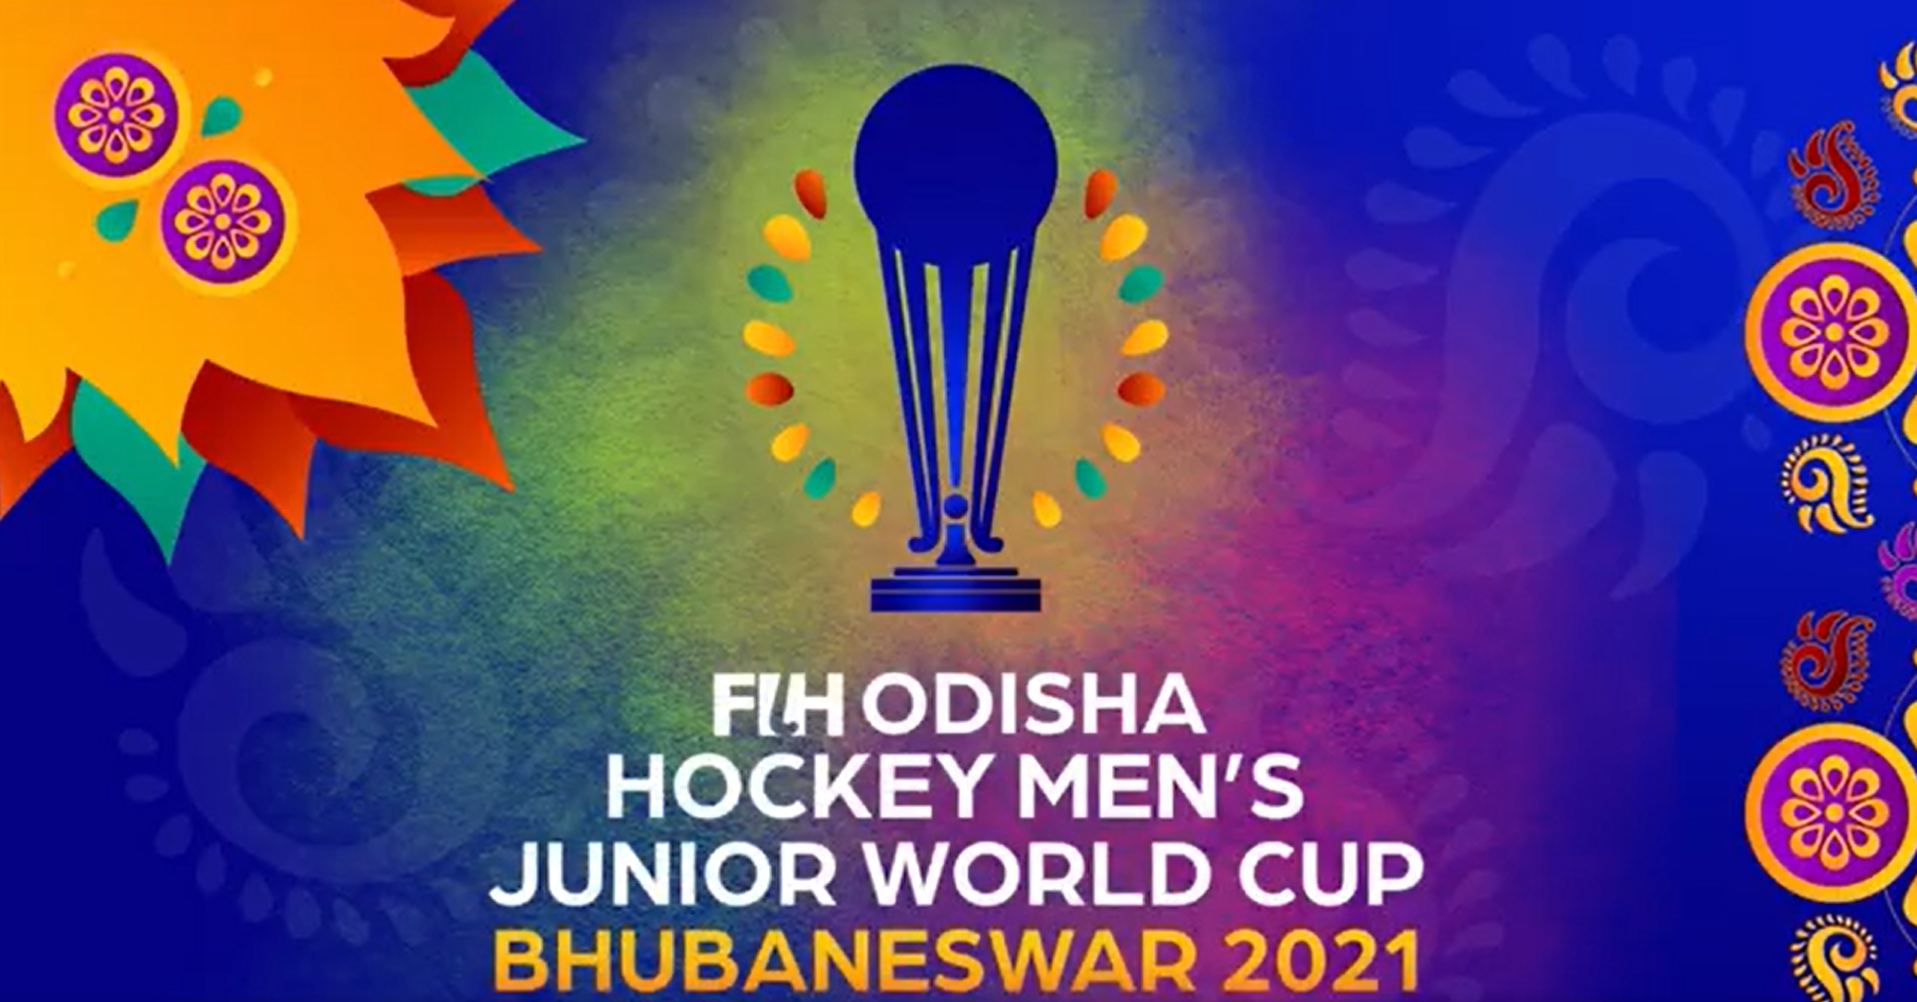 Junior world cup fih FIH Odisha